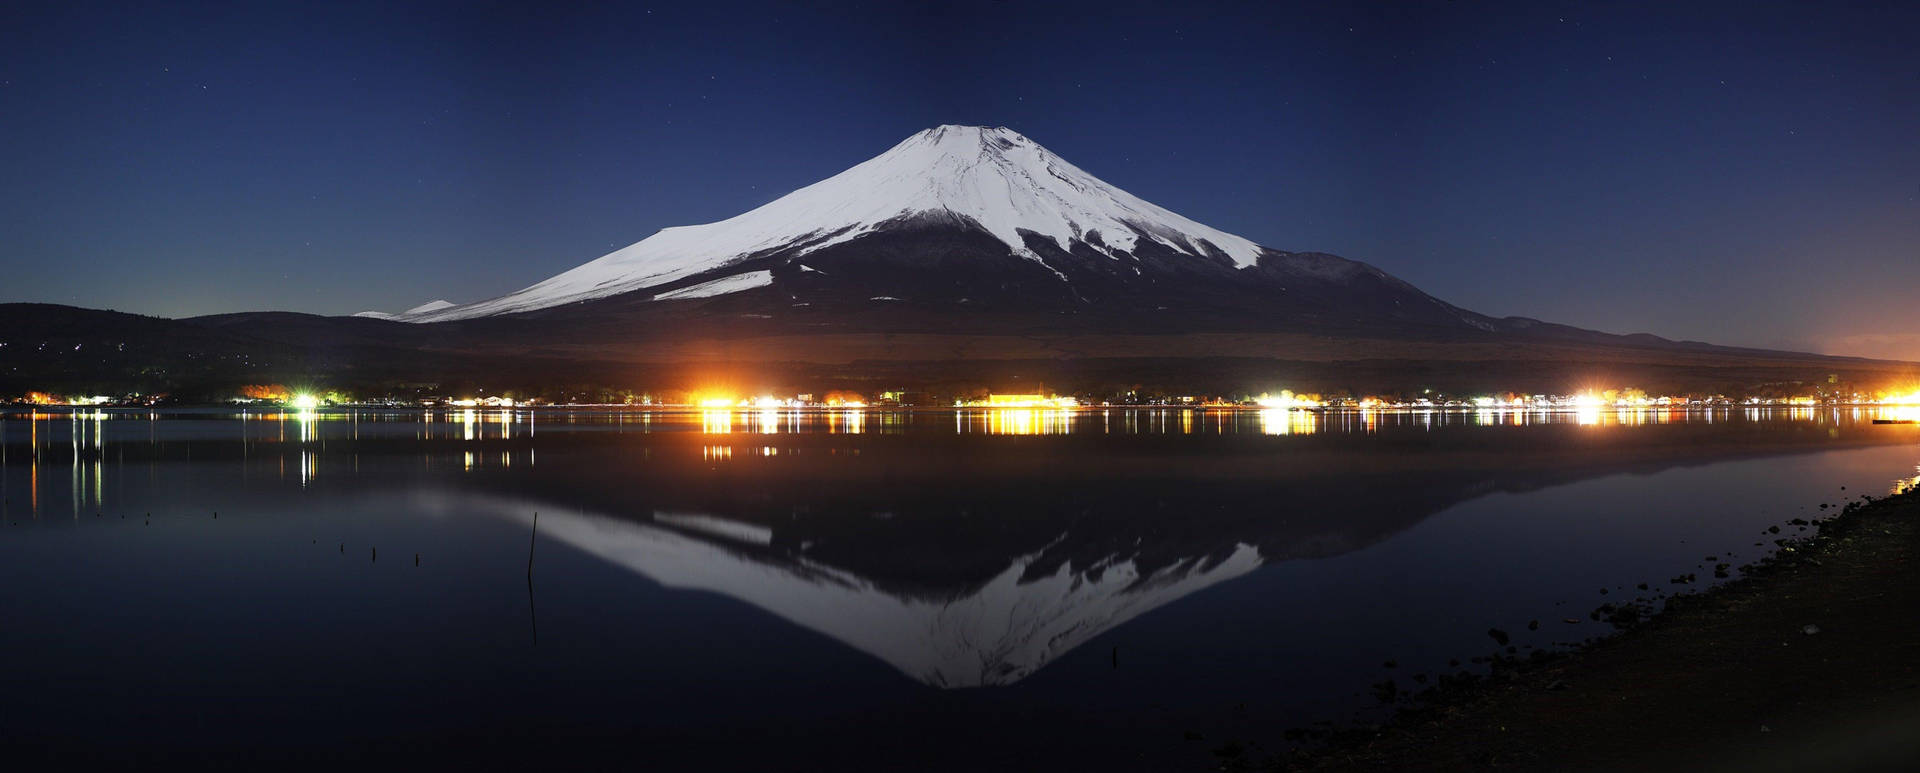 4k Dual Monitor Mount Fuji At Night Background